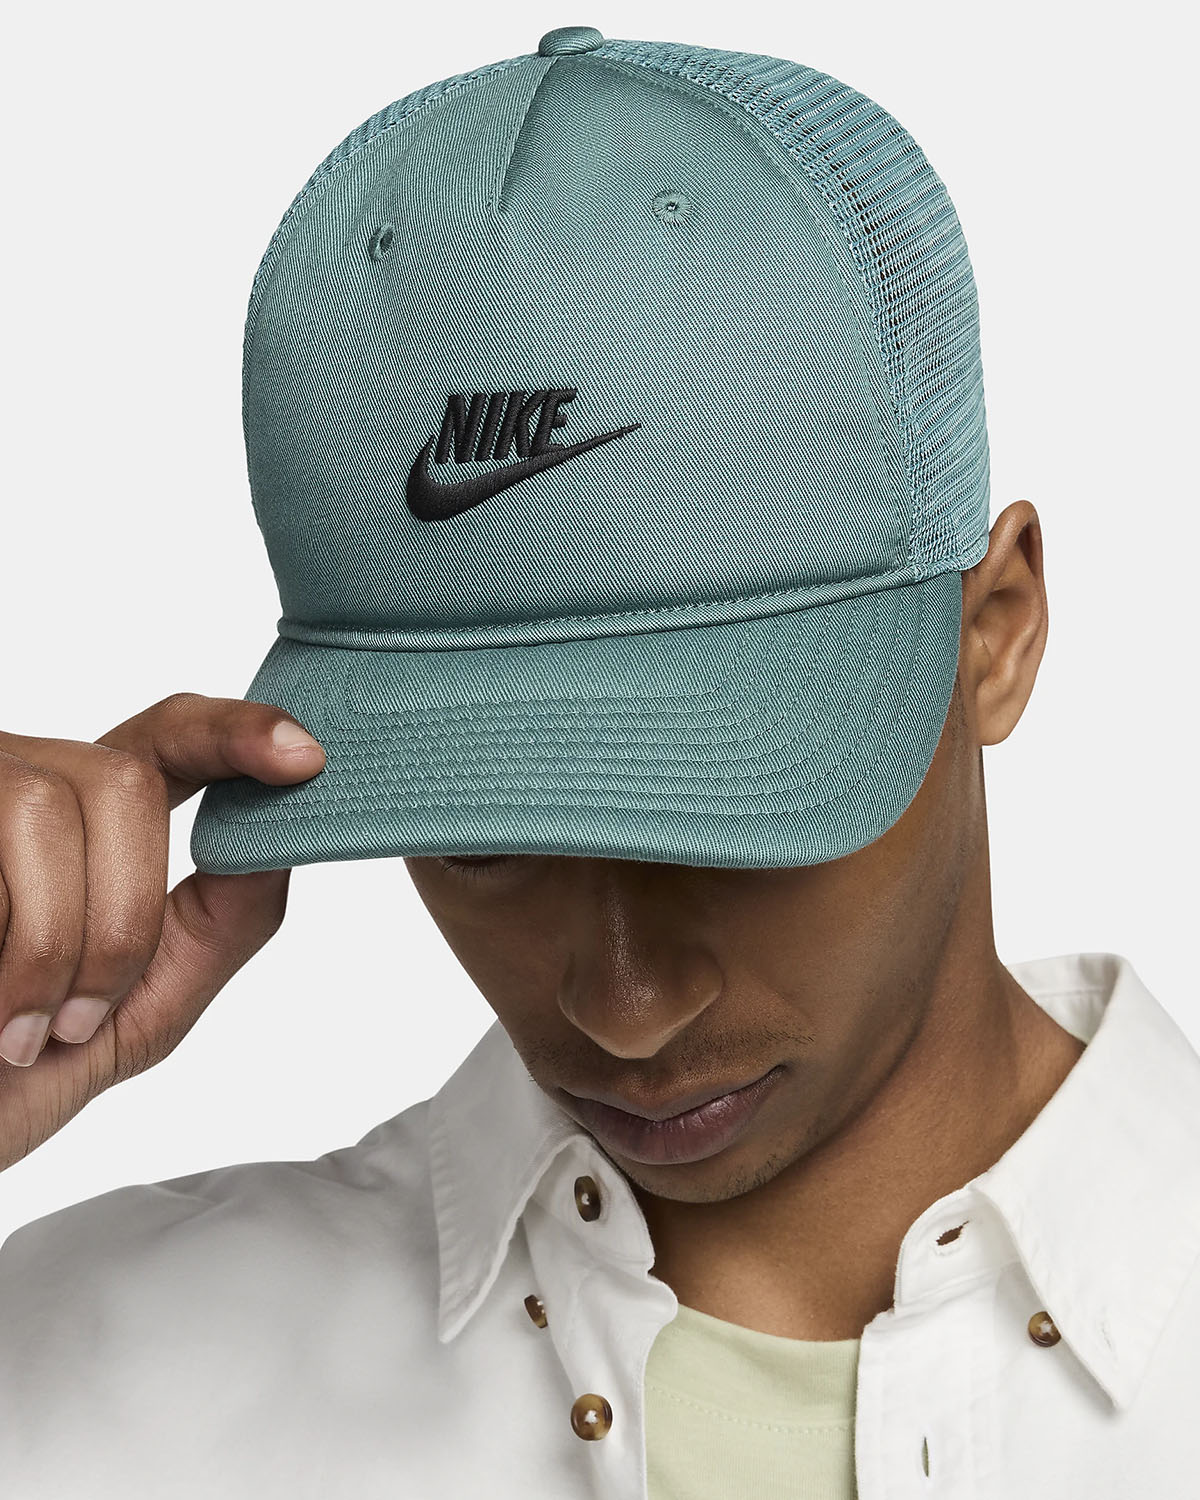 Nike Rise Cap Trucker Hat Bicoastal